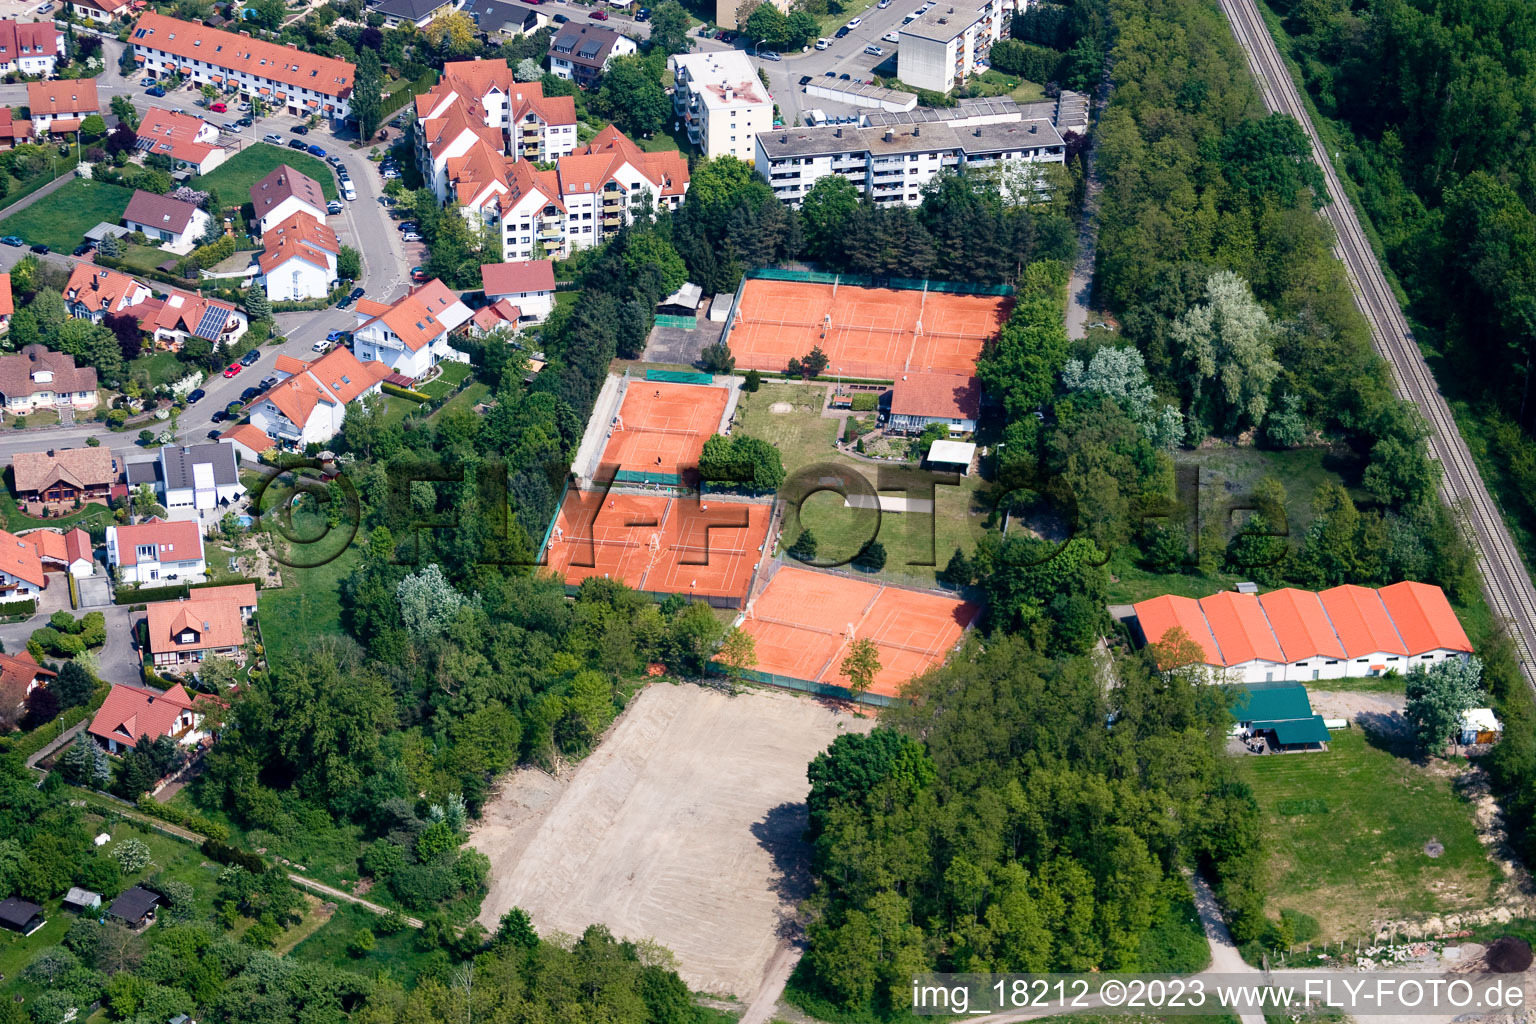 Vue aérienne de Terrain de tennis à Jockgrim dans le département Rhénanie-Palatinat, Allemagne